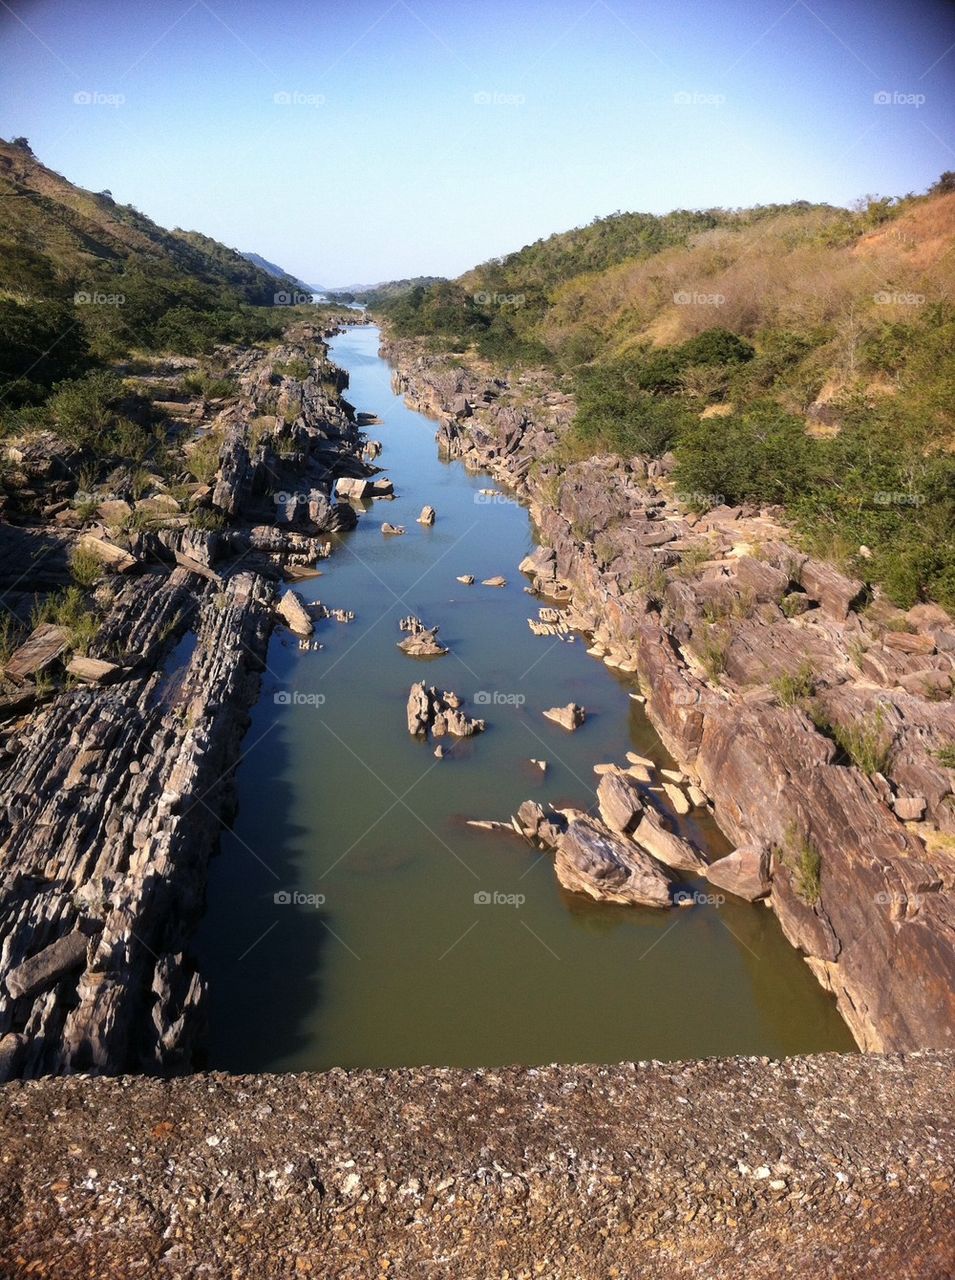 Paraiba do Sul River divides Minas Gerais and Rio de Janeiro state in